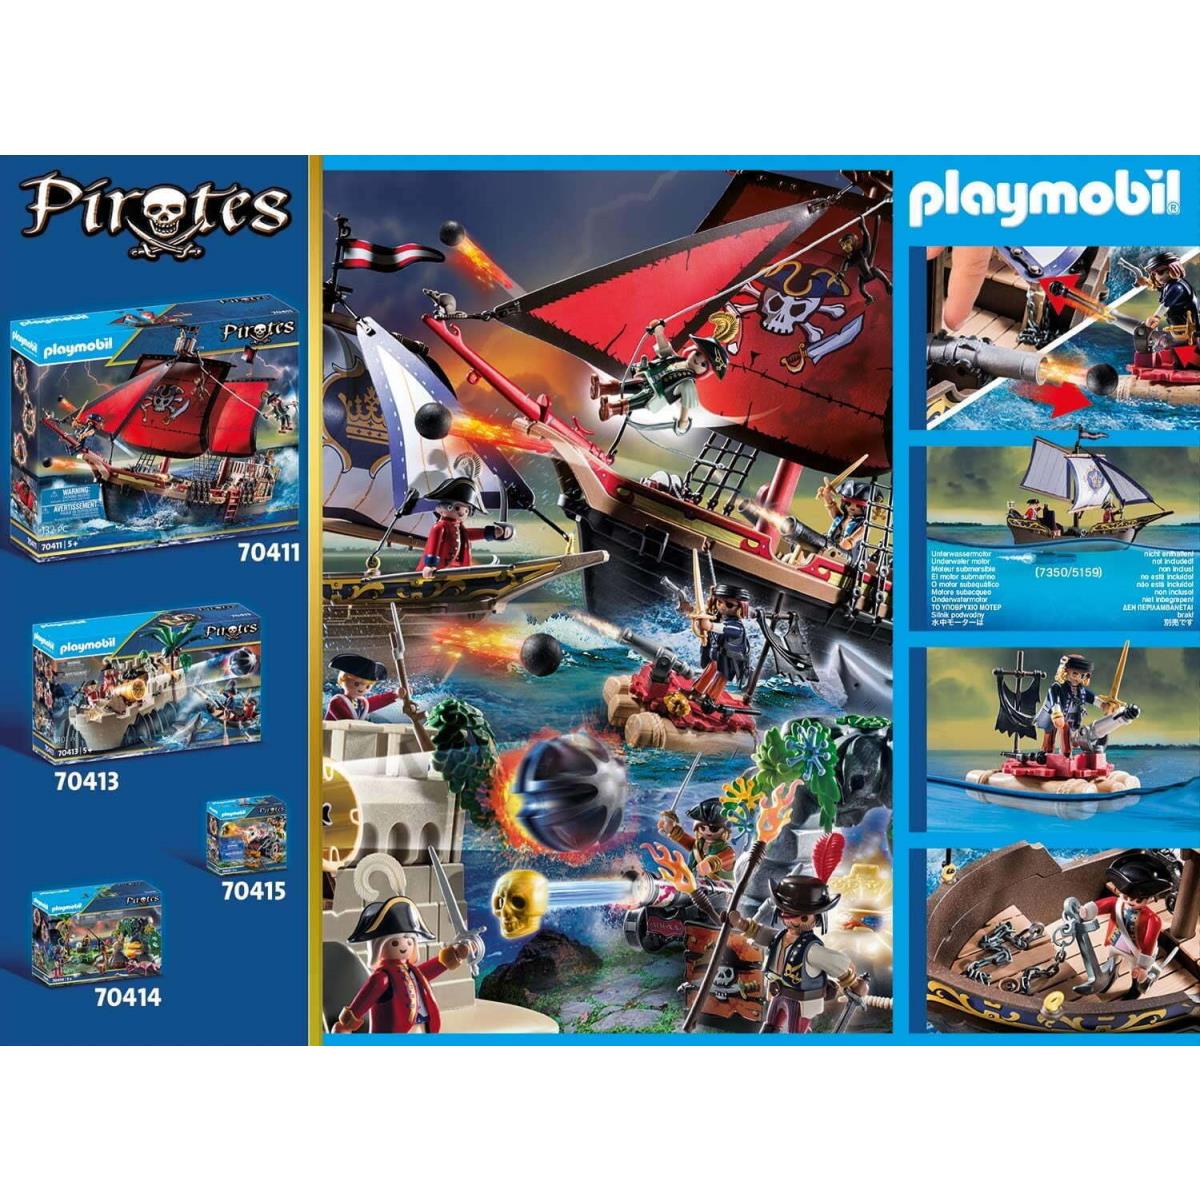 Playmobil Pirates Redcoat Caravel Bastion Playset Sailors Pirate Ship Raft